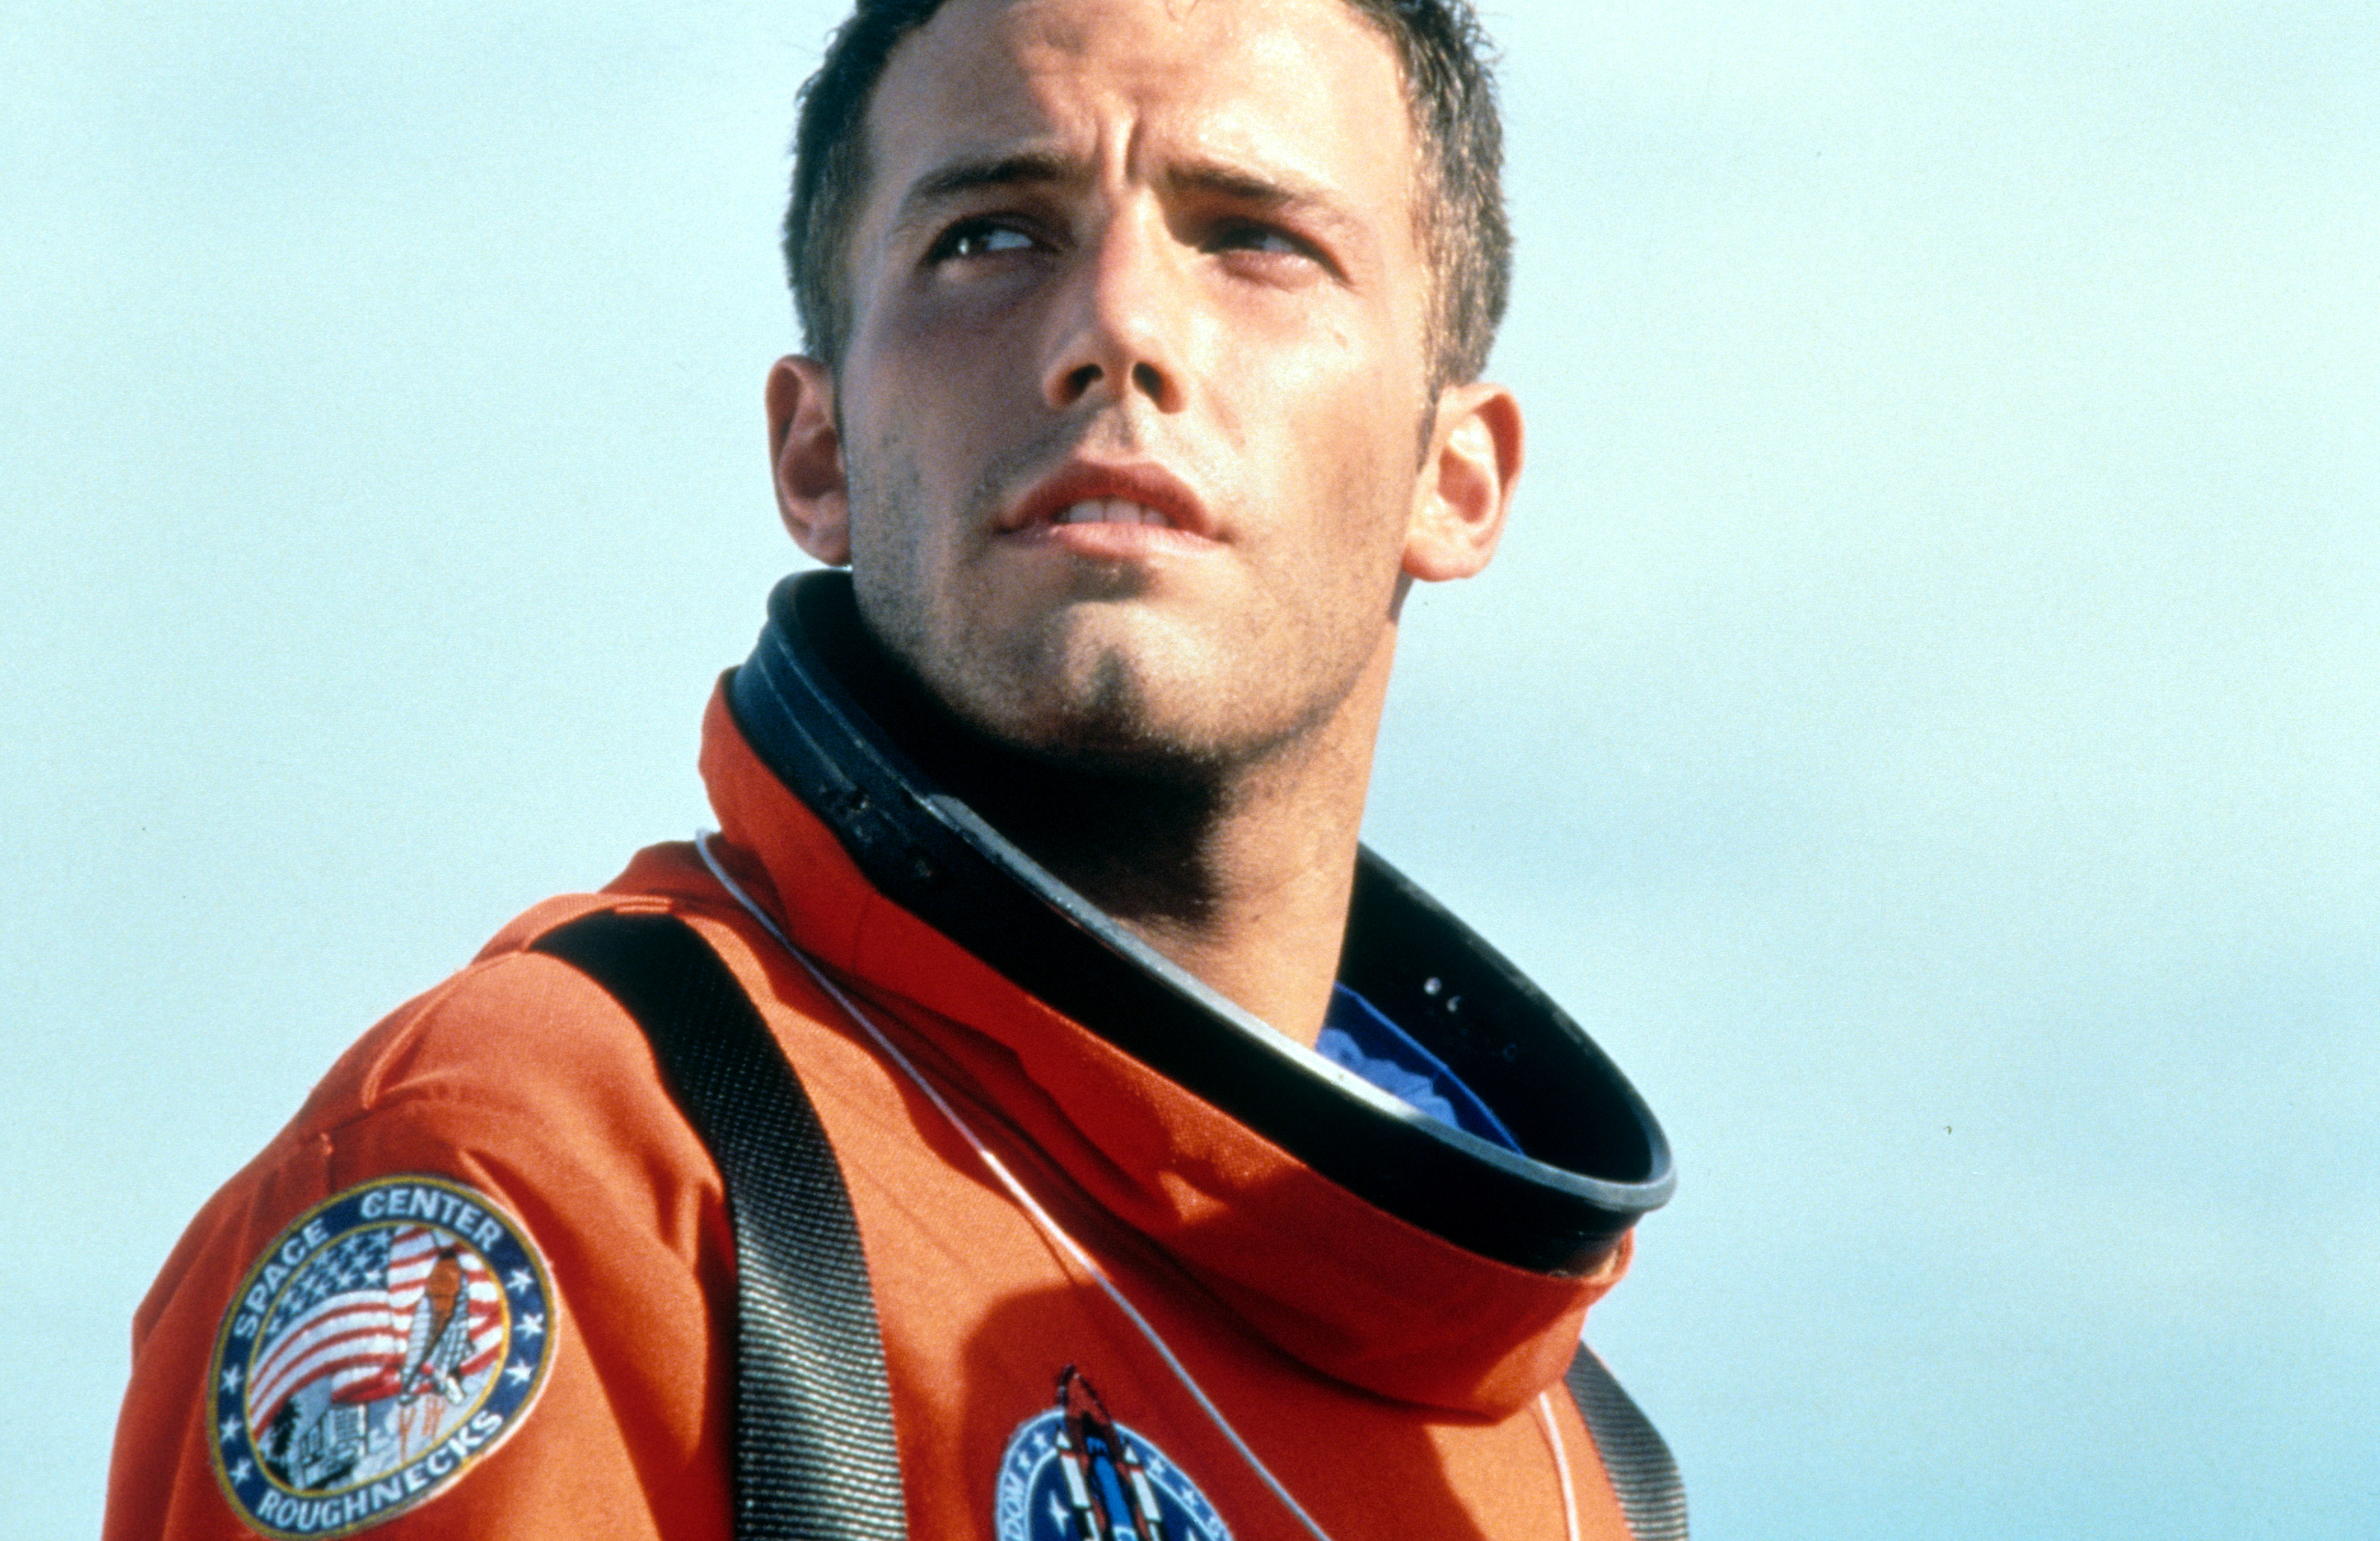 Ben Affleck dans "Armageddon" en 1998. | Source : Getty Images